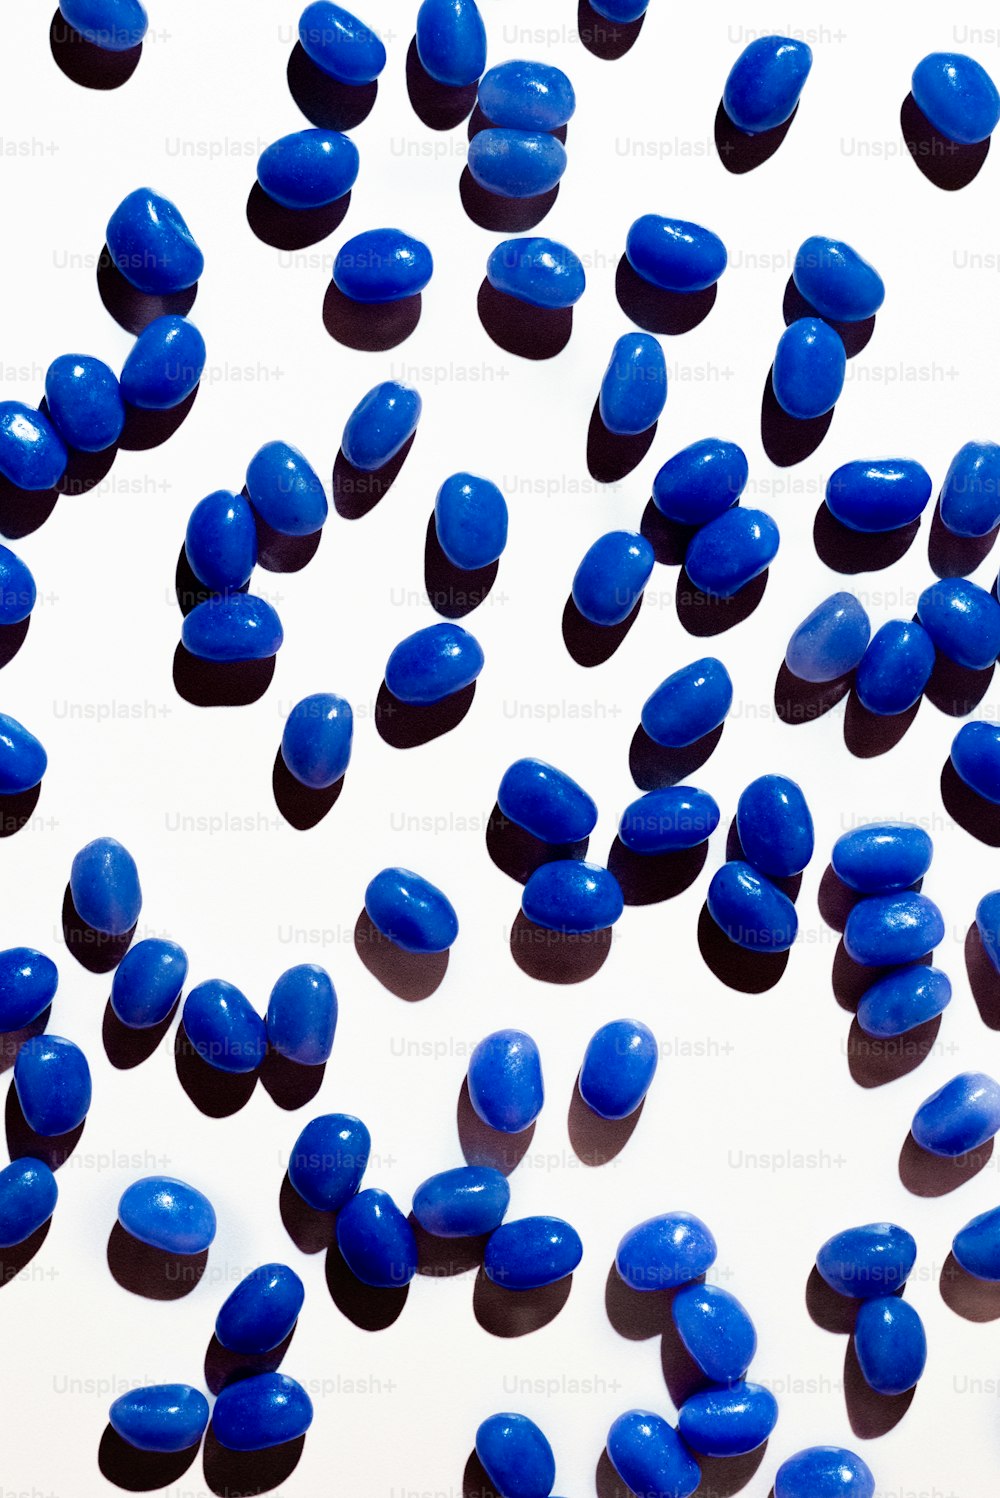 Viele blaue Pillen sind auf einer weißen Oberfläche verstreut